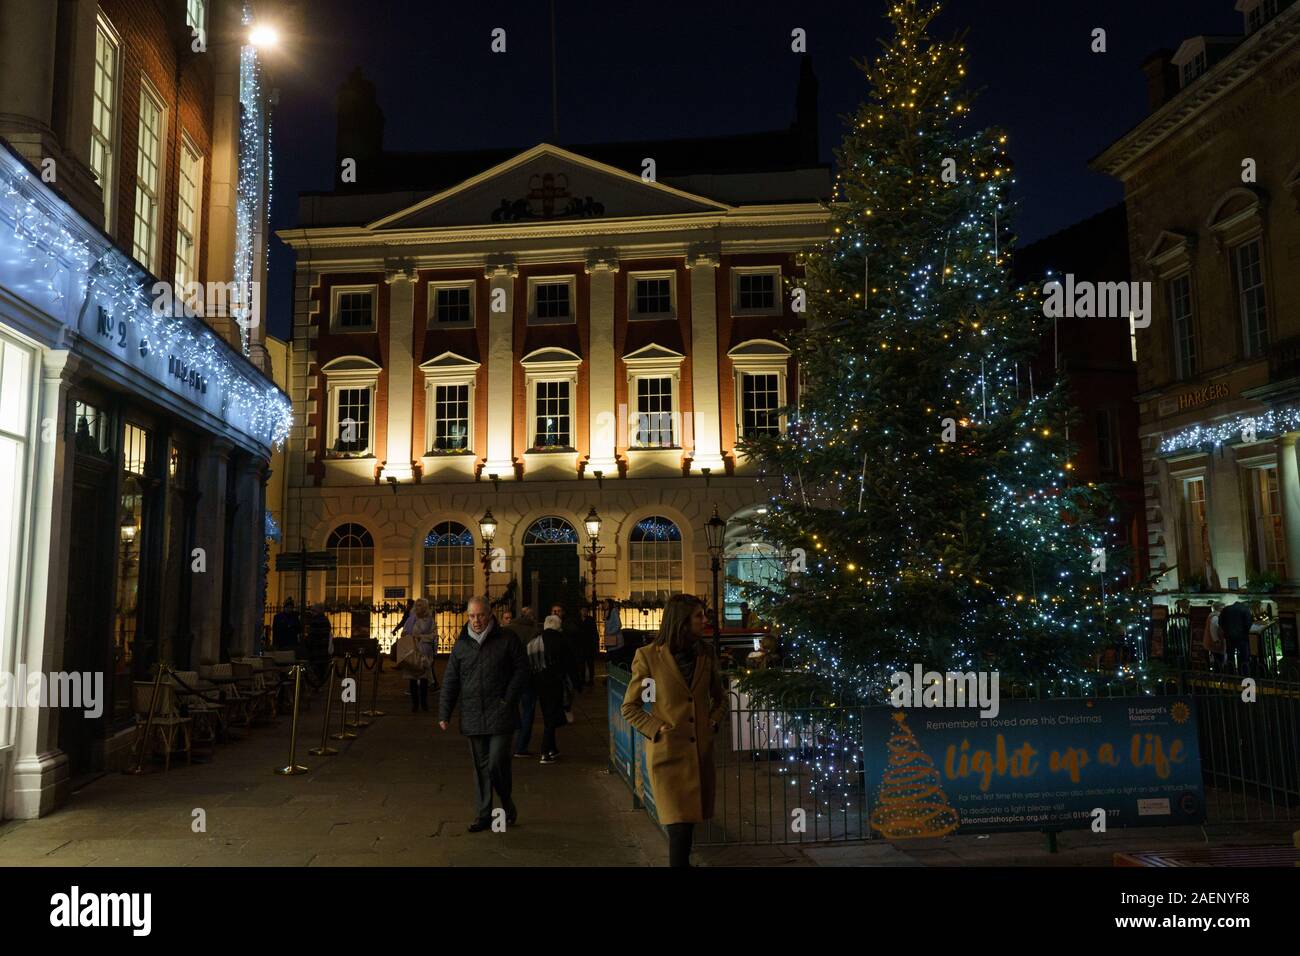 Arbre de Noël décoré de lumières festives et le Mansion House en arrière-plan, York, North Yorkshire, Angleterre, Royaume-Uni. Banque D'Images